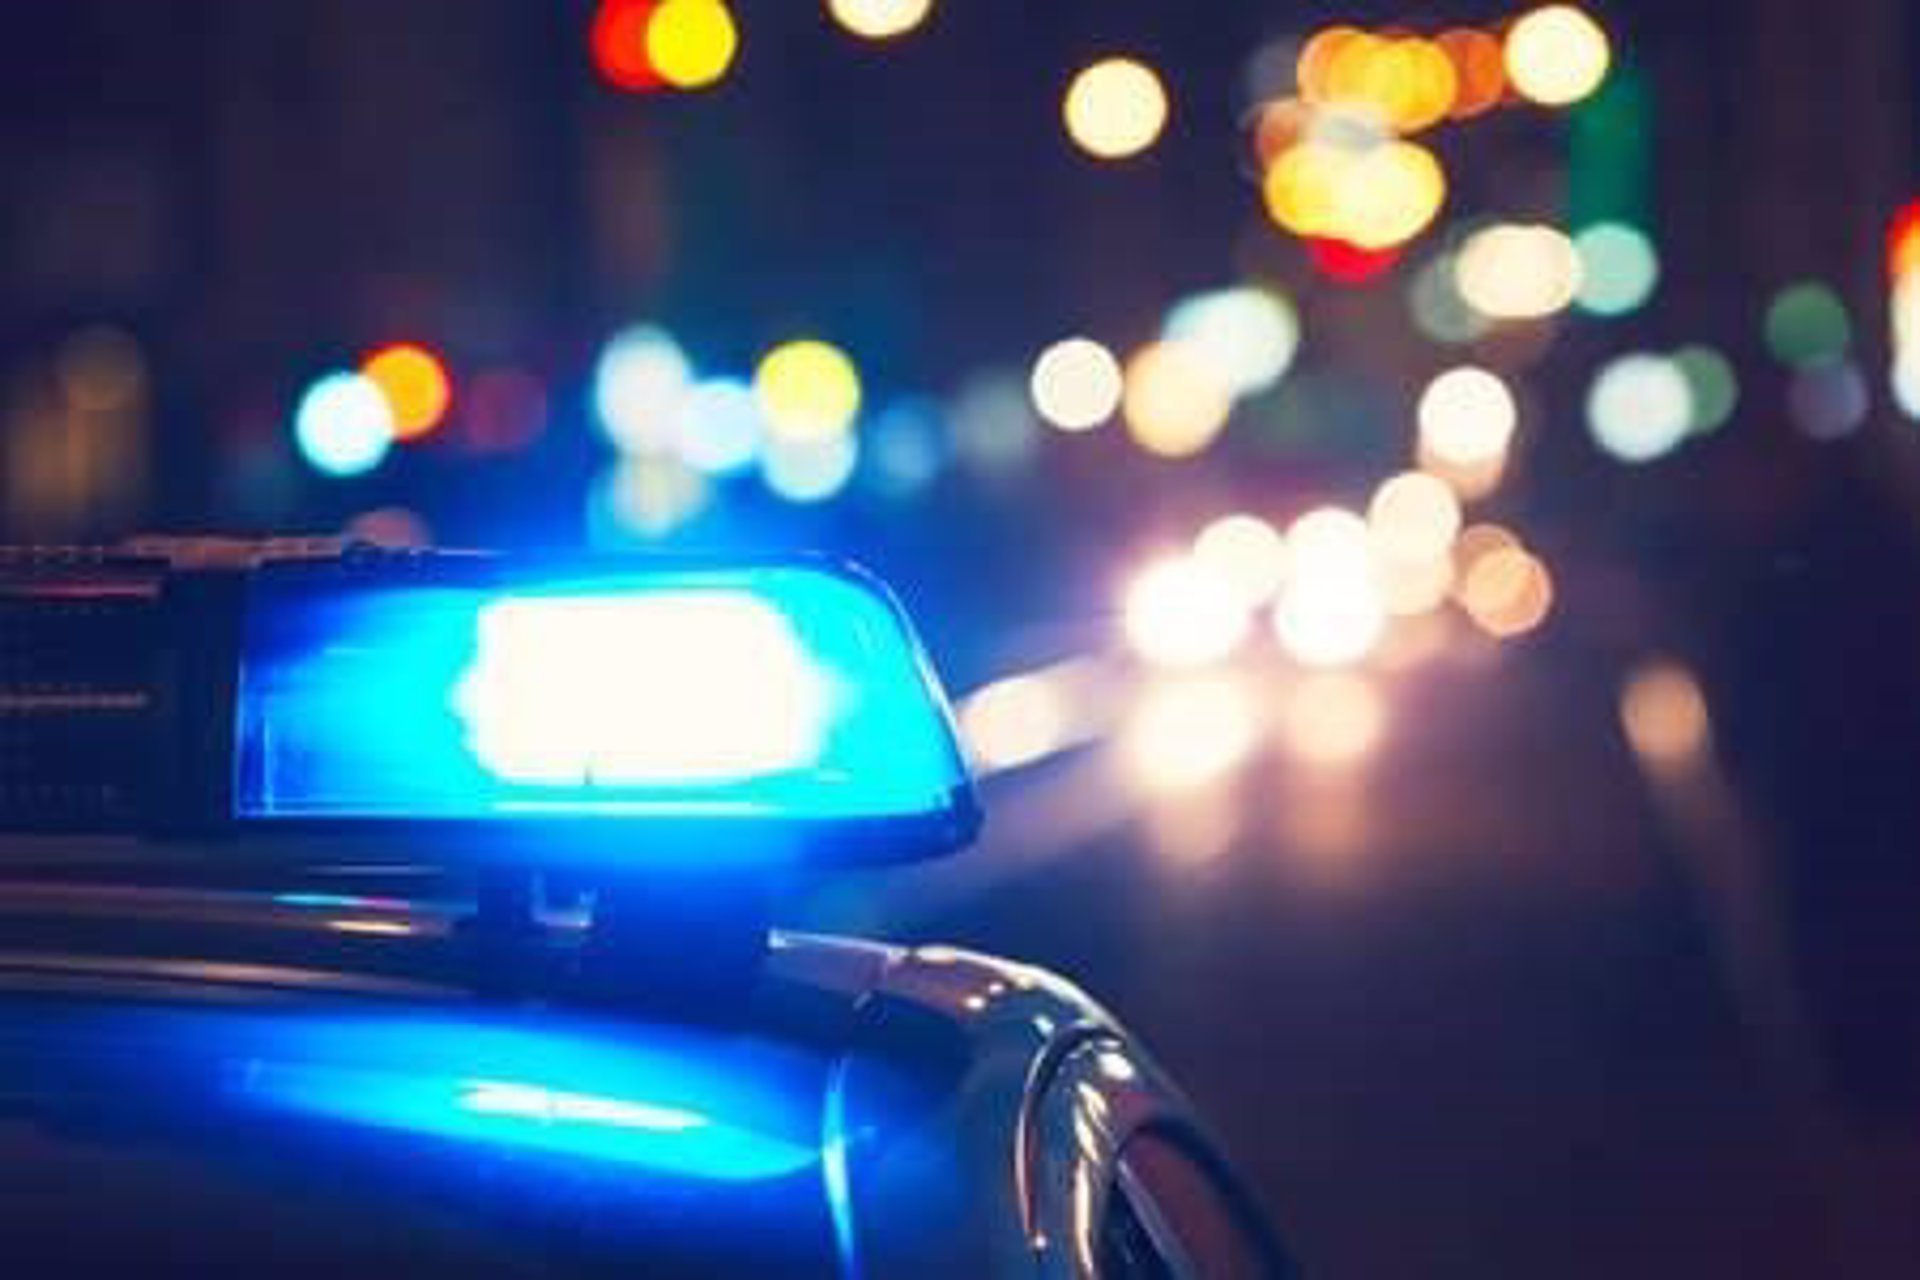 Un varón de 43 años de edad ha sido detenido esta noche en la capital vallisoletana por amenazar a su expareja en su domicilio.